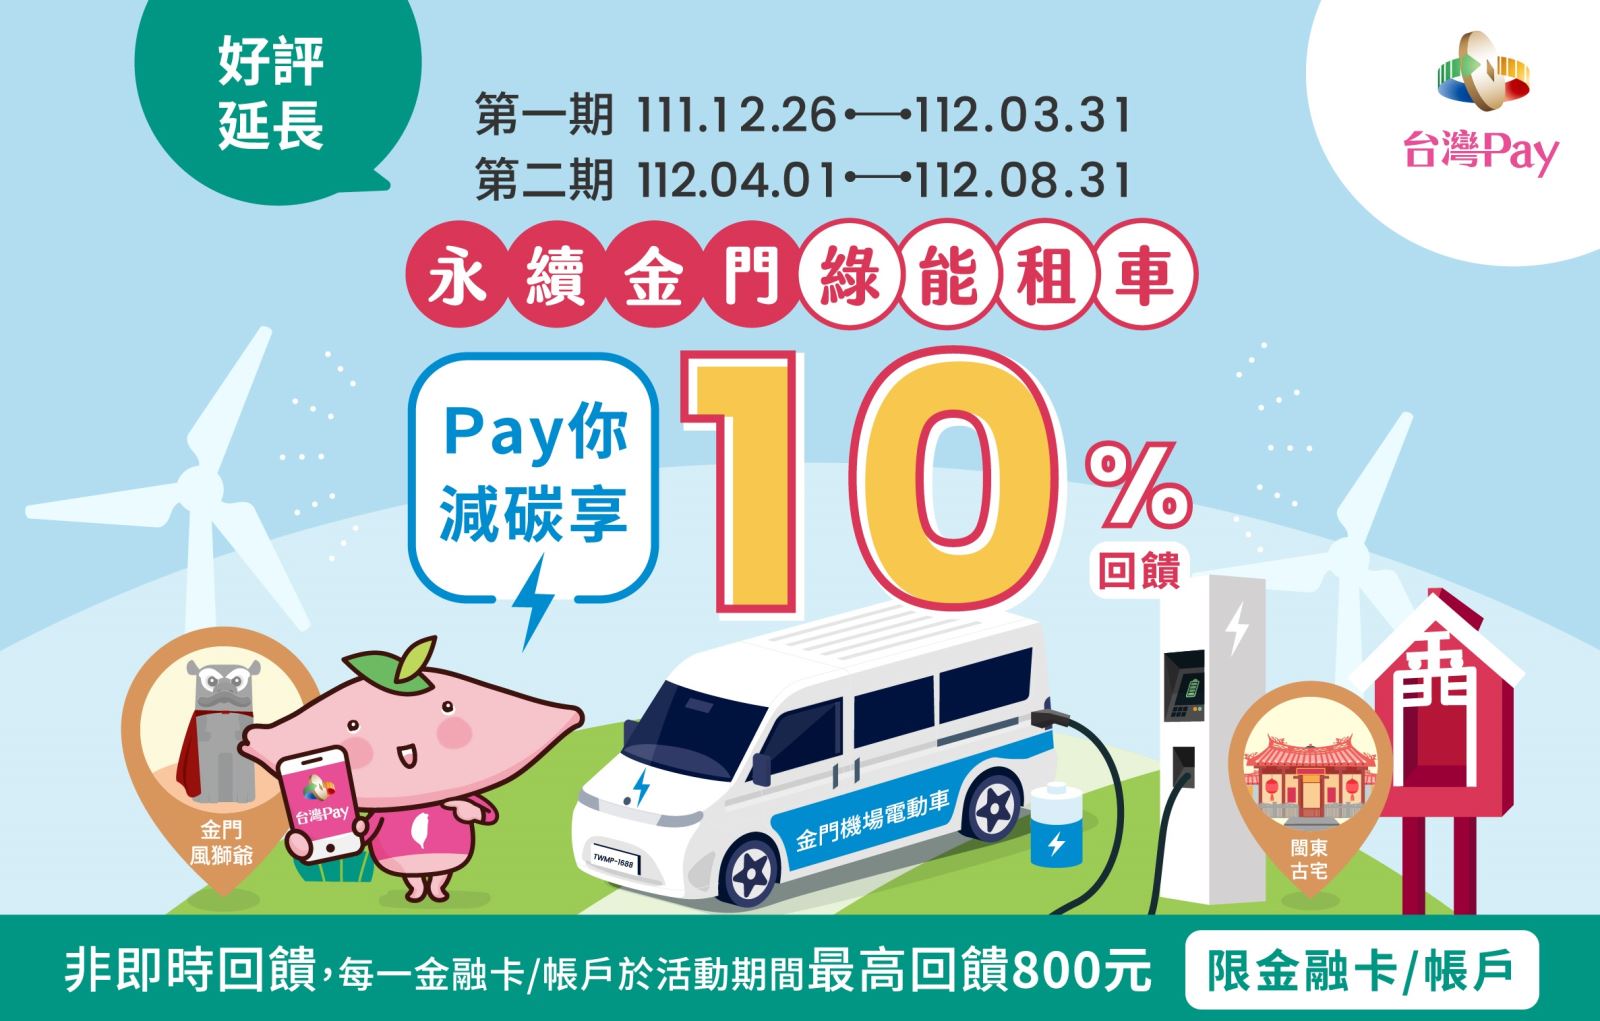 用戶活動期間於活動地點，以「台灣Pay」QR Code掃碼支付，單筆消費不限金額可享10%現金回饋